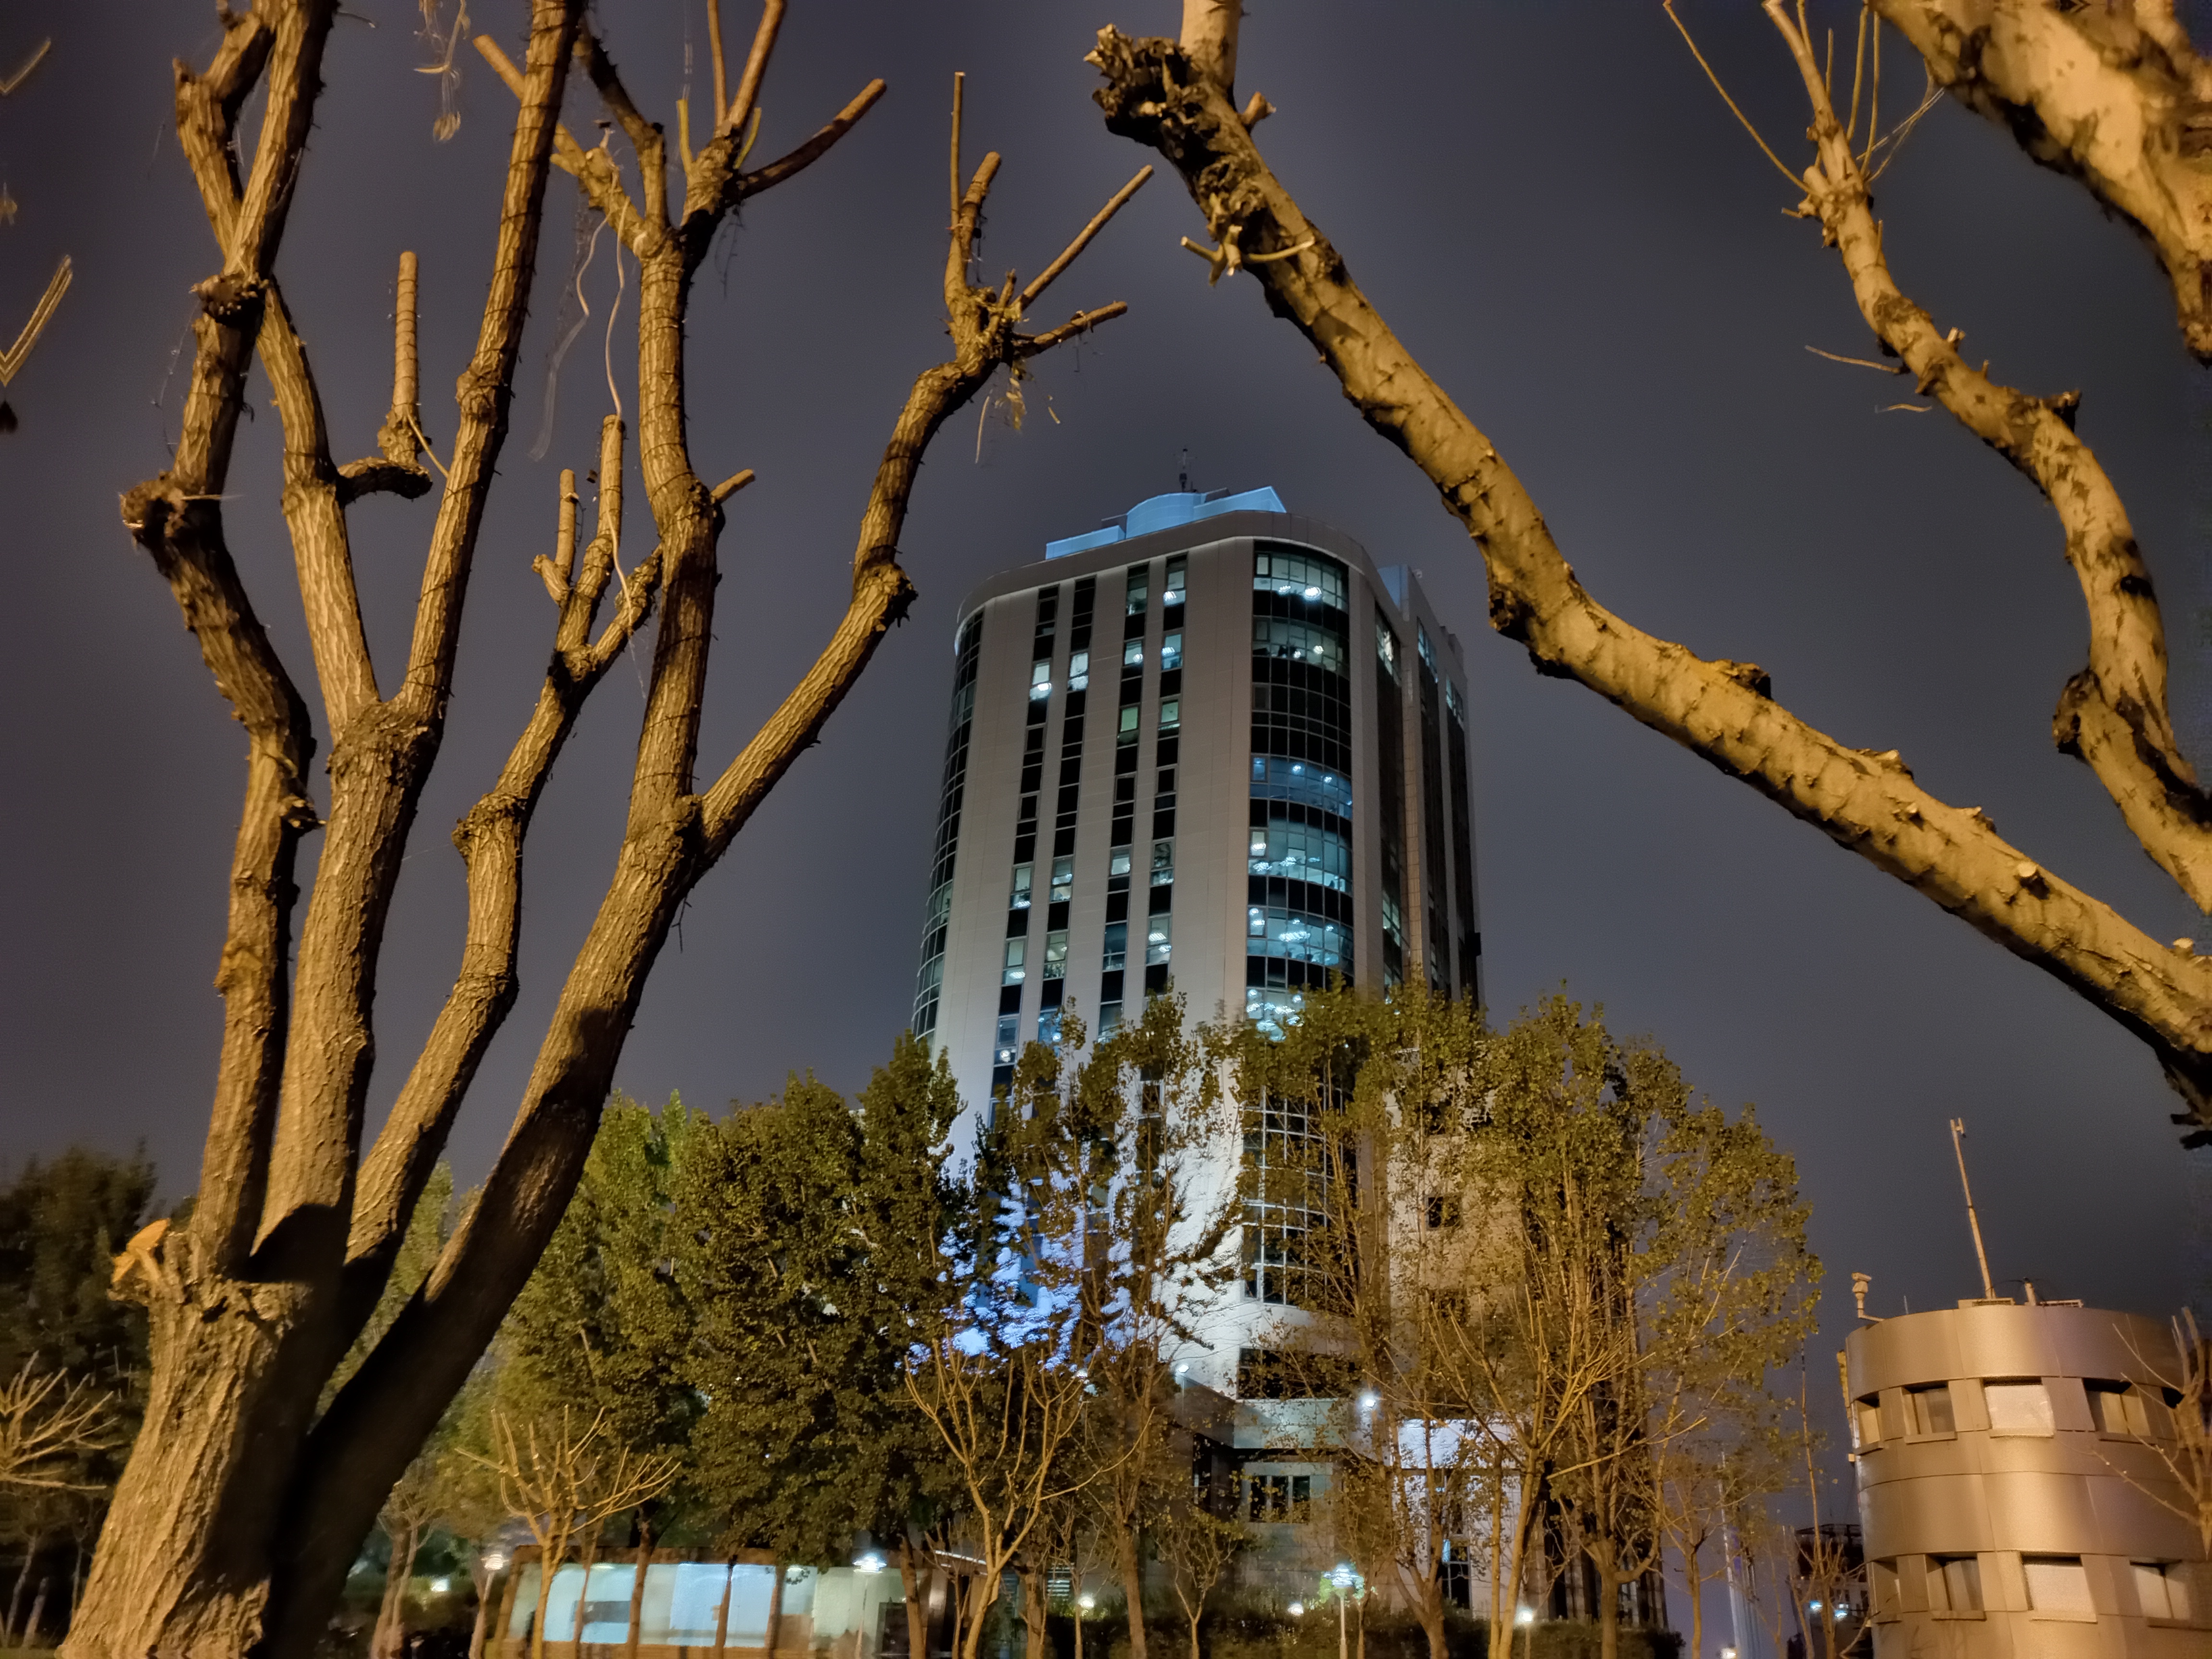 نمونه عکس ۲ برابری دوربین اصلی گوشی هواوی Y9a در تاریکی - ساختمانی در پارک آب و آتش تهران